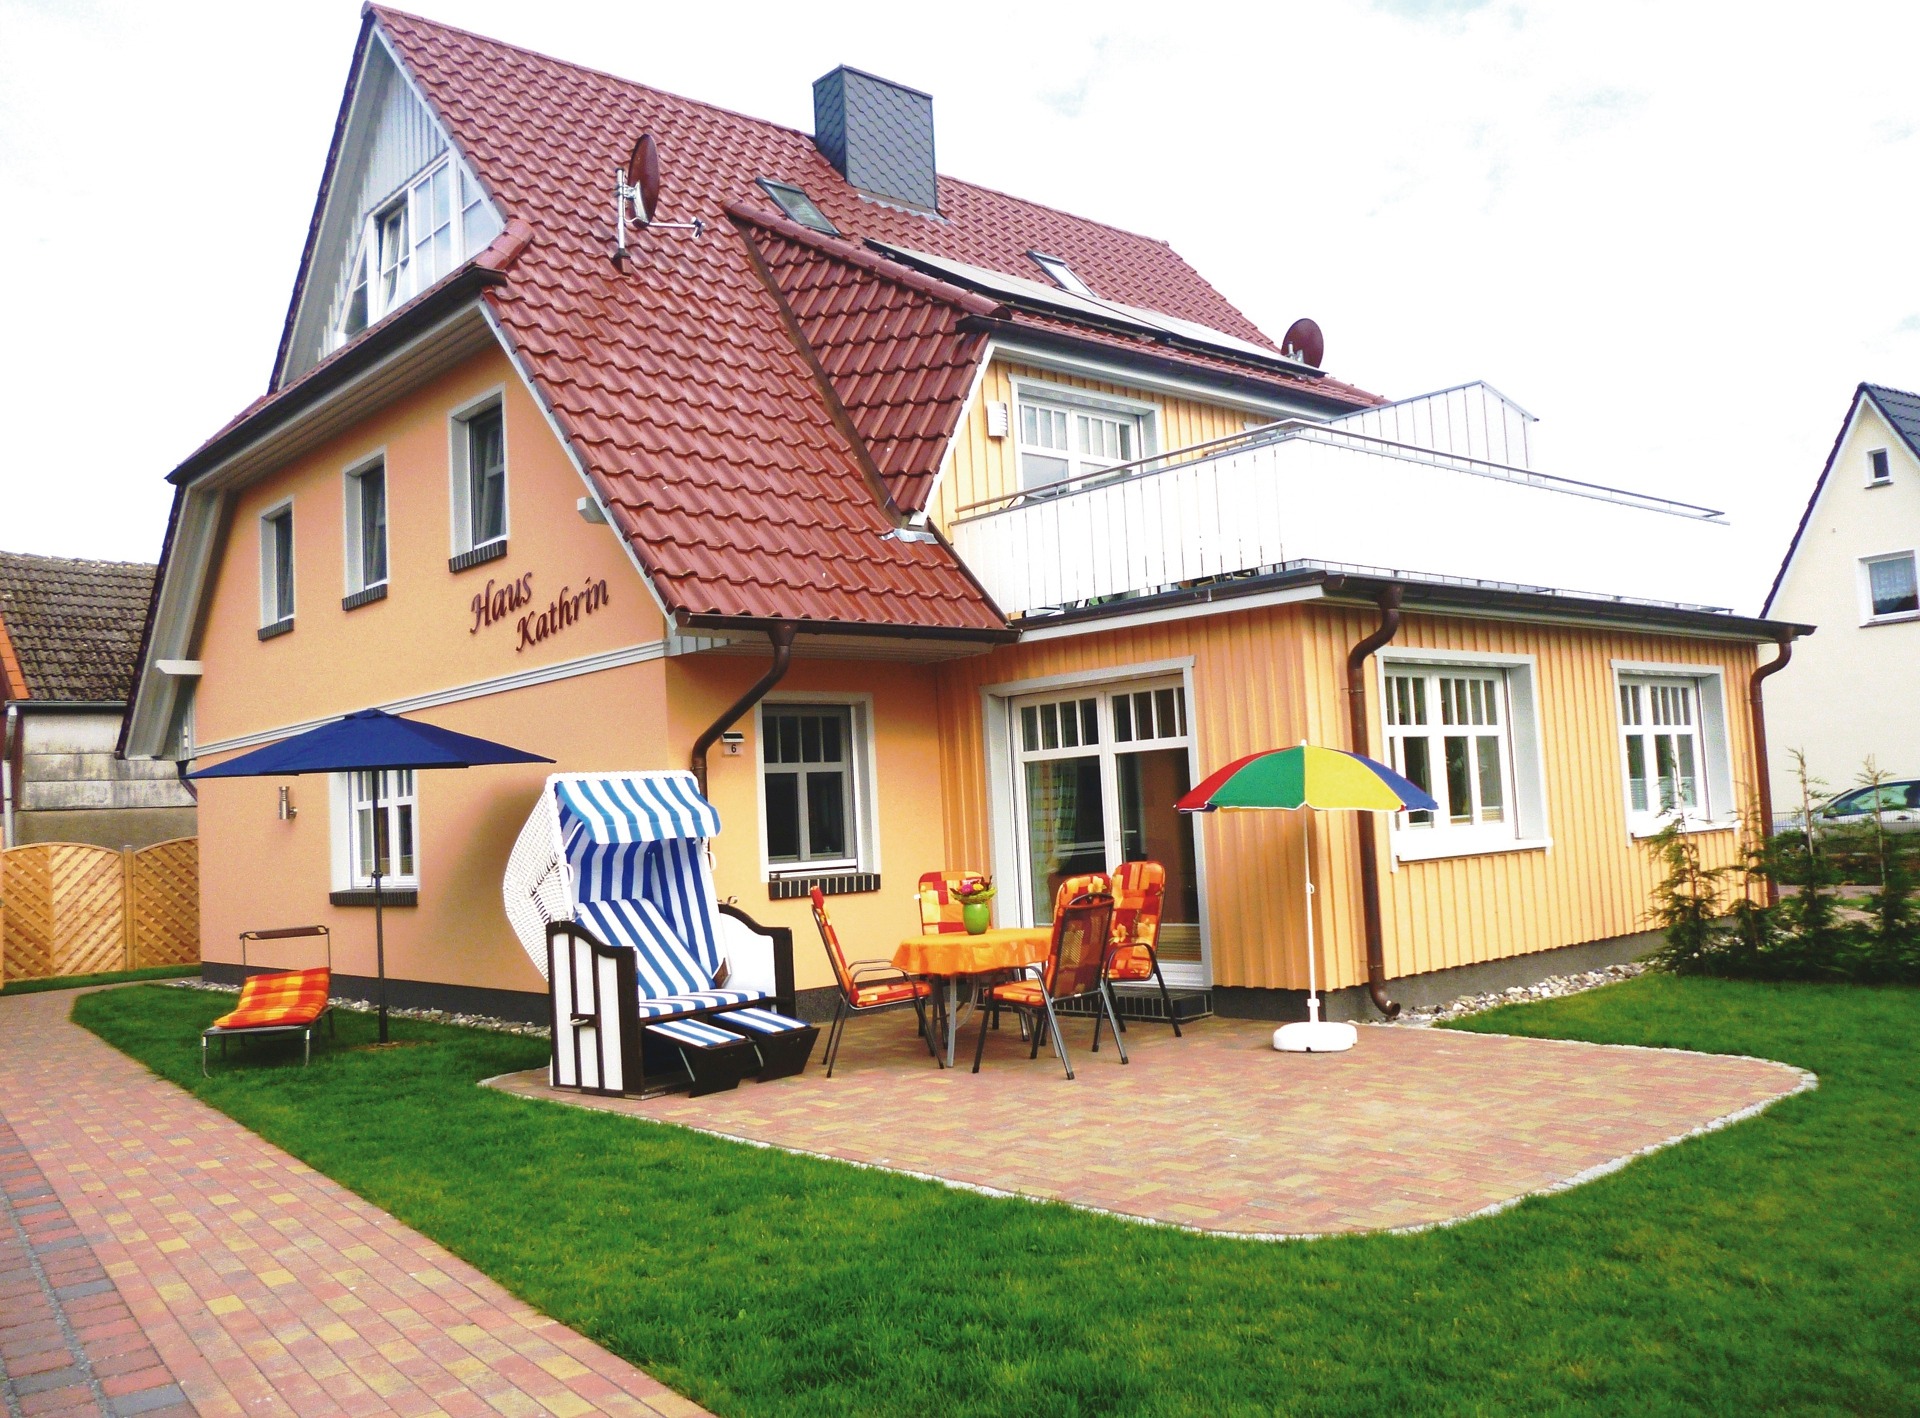 Haus Kathrin Ferienhaus an der Ostsee